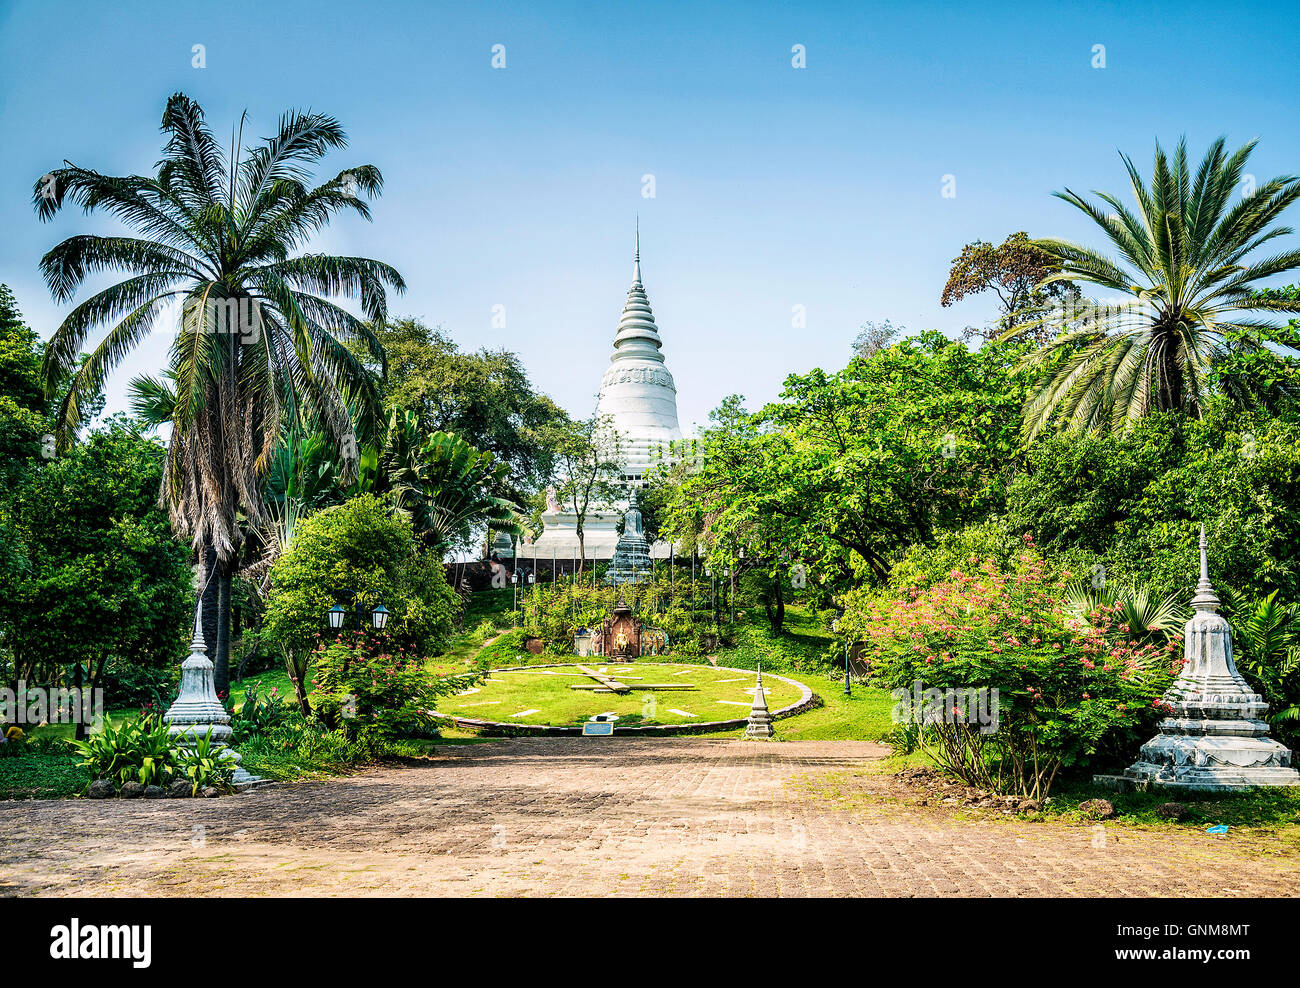 Famoso Wat Phnom tempio punto di riferimento nel centro di Phnom Penh Cambogia città Foto Stock